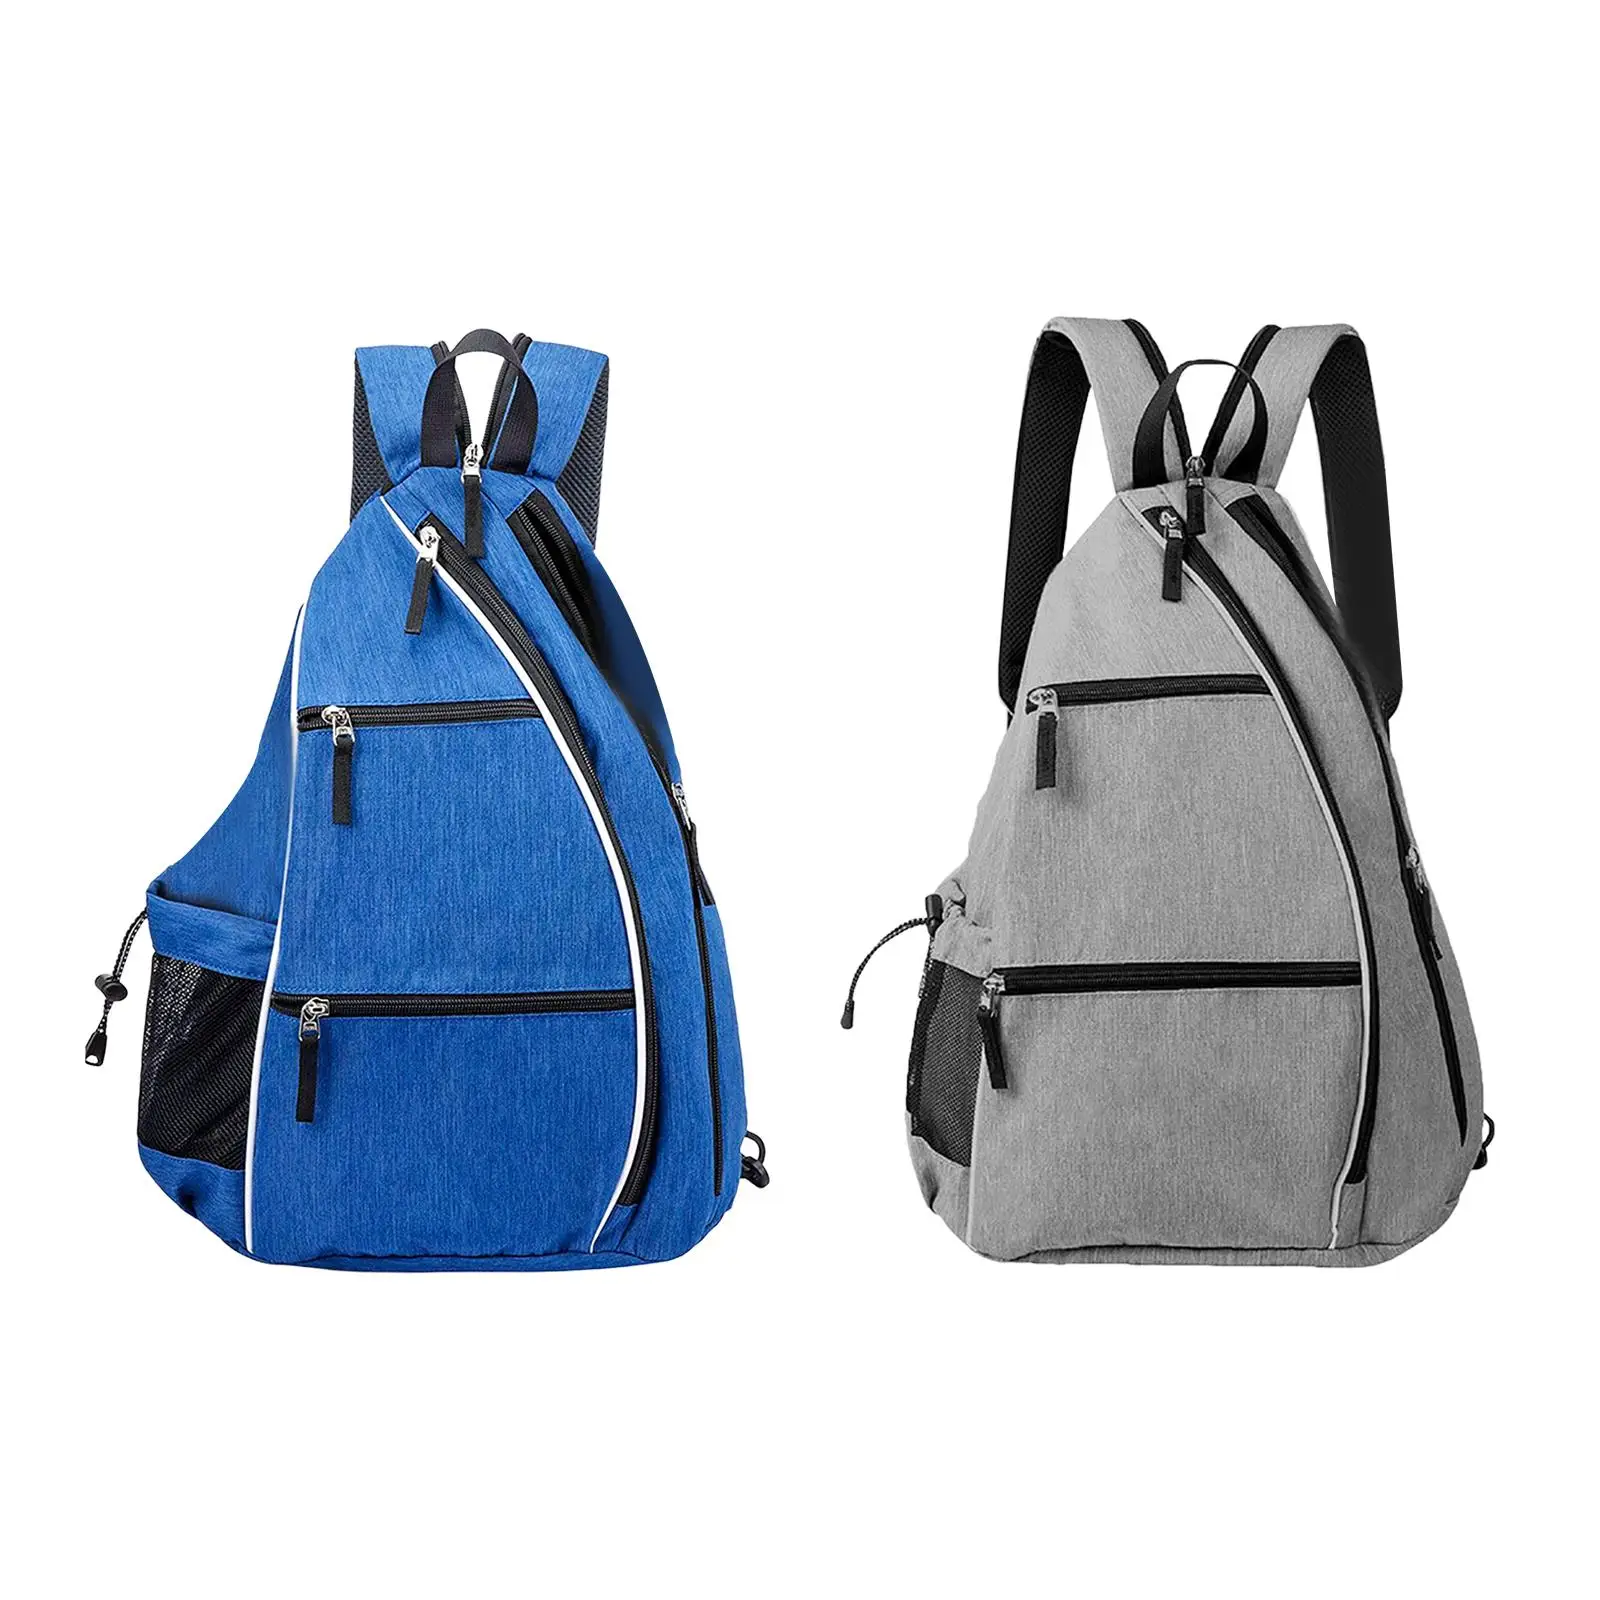 Pickleball Backpack Accessories Multifunctional Storage Carrier Badminton Travel Bag Pickleball Bag for Women Men Gift